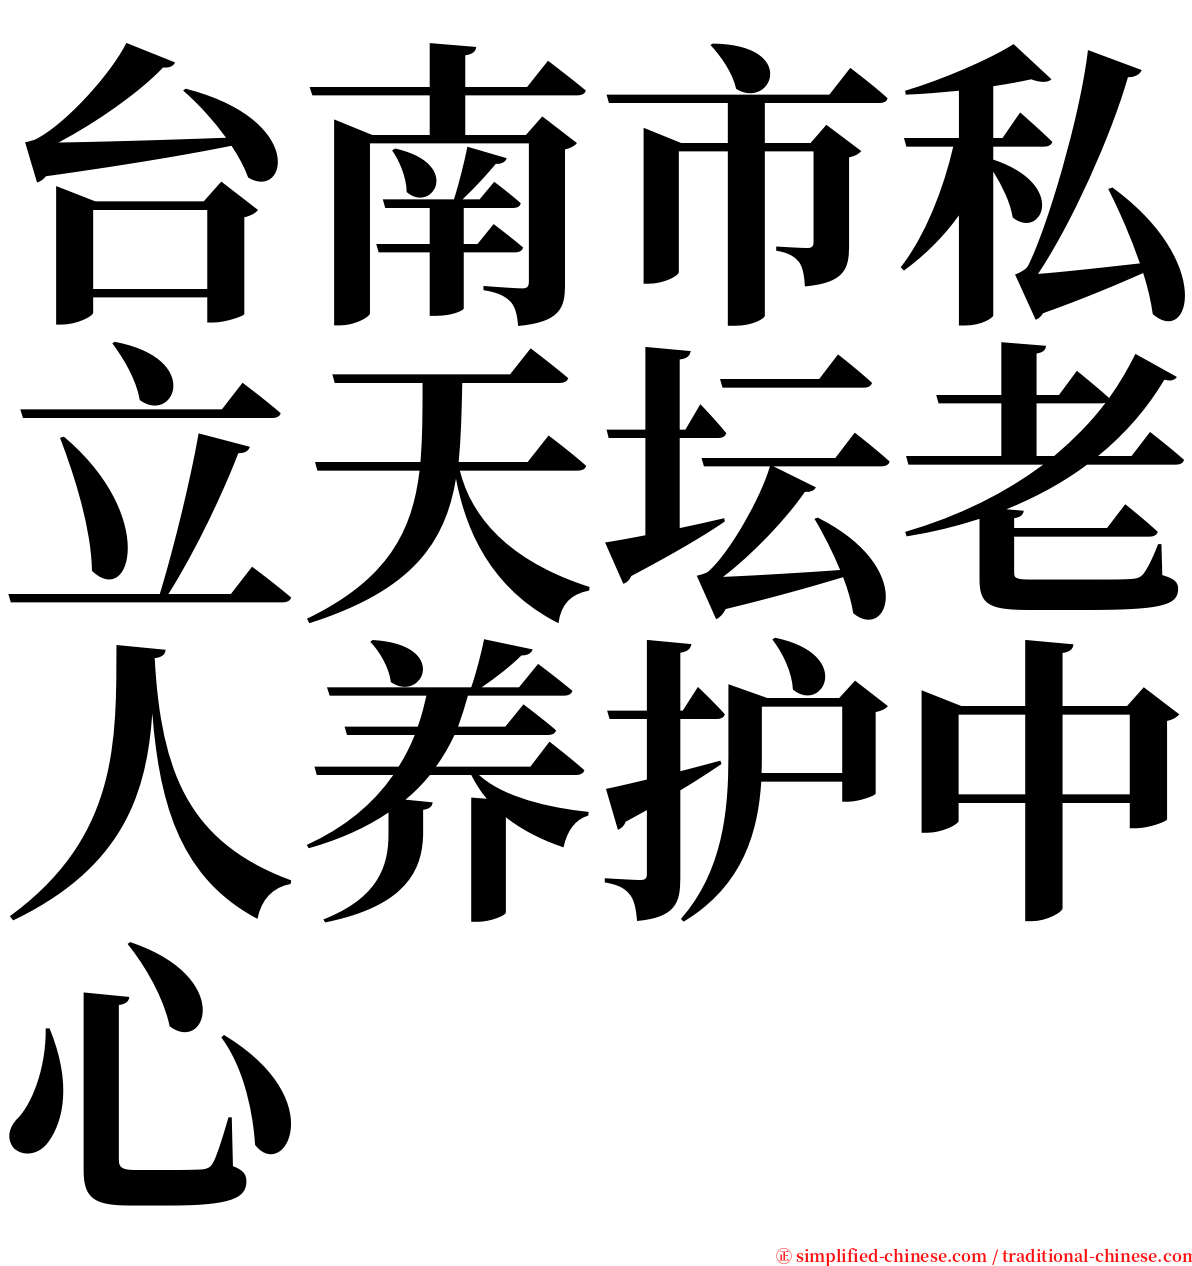 台南市私立天坛老人养护中心 serif font